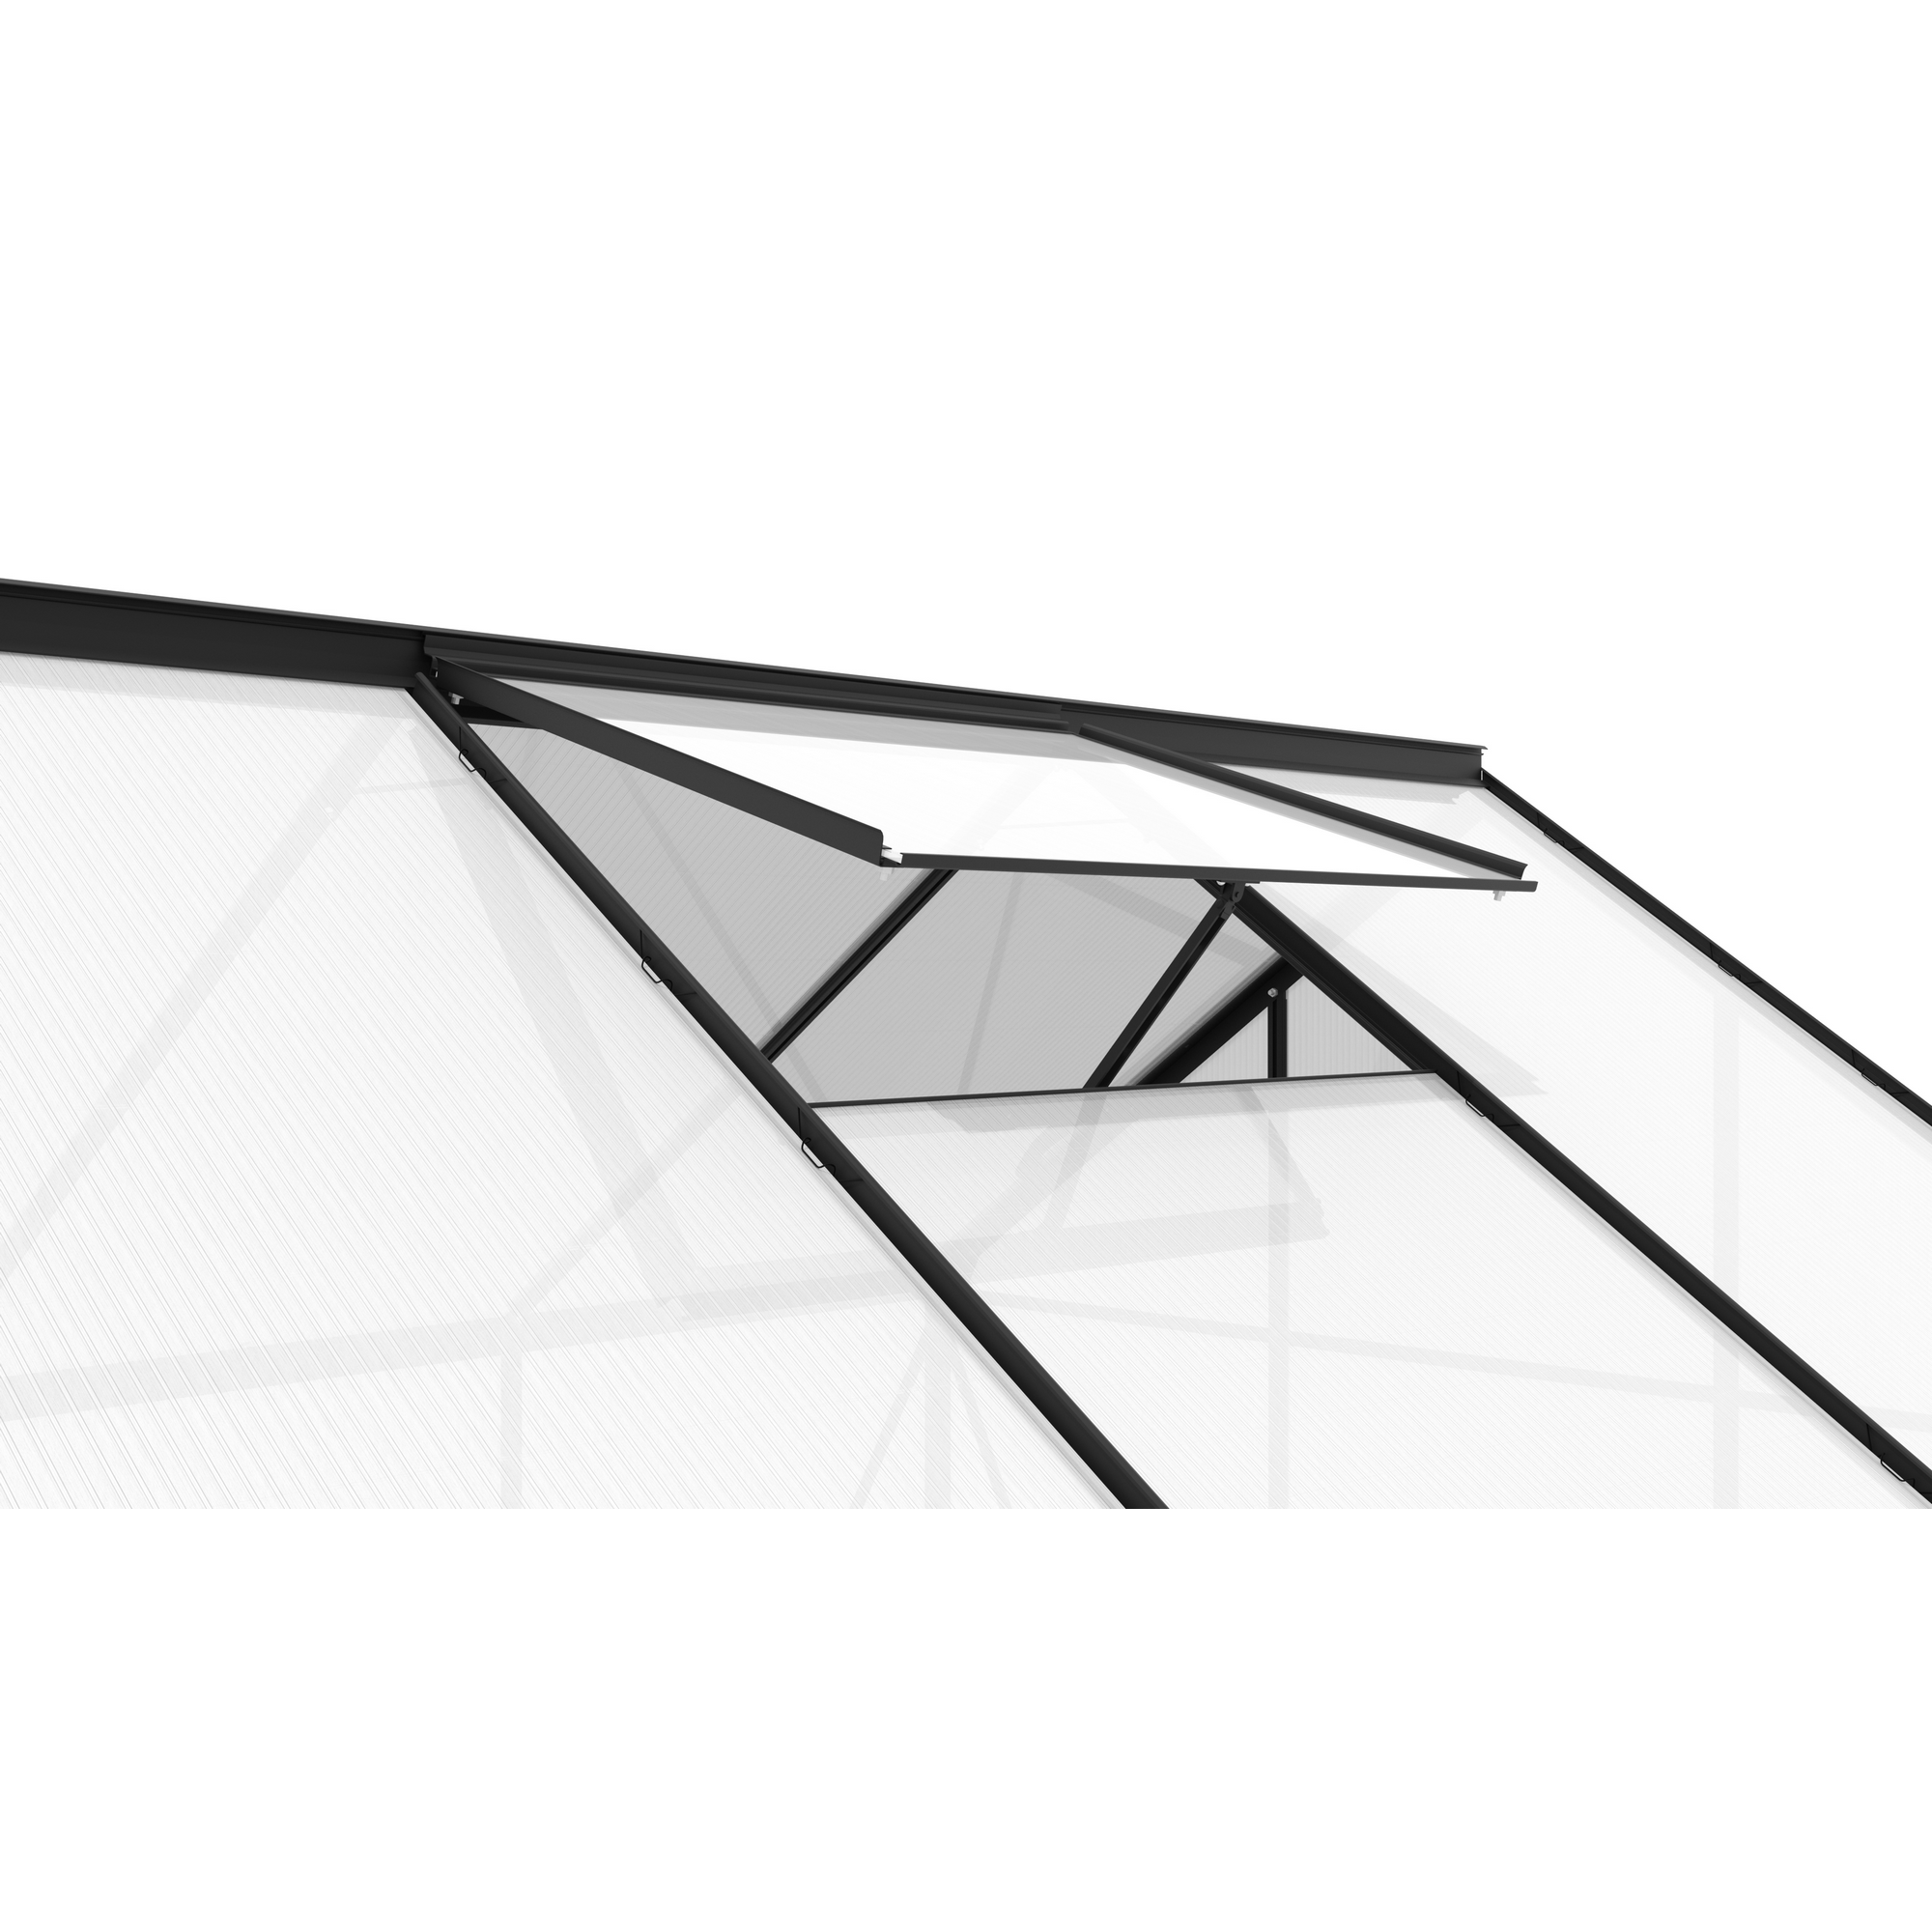 Dachfenster für Gewächshaus 'Calypso' Aluminium anthrazit 73,6 x 57,3 cm + product picture